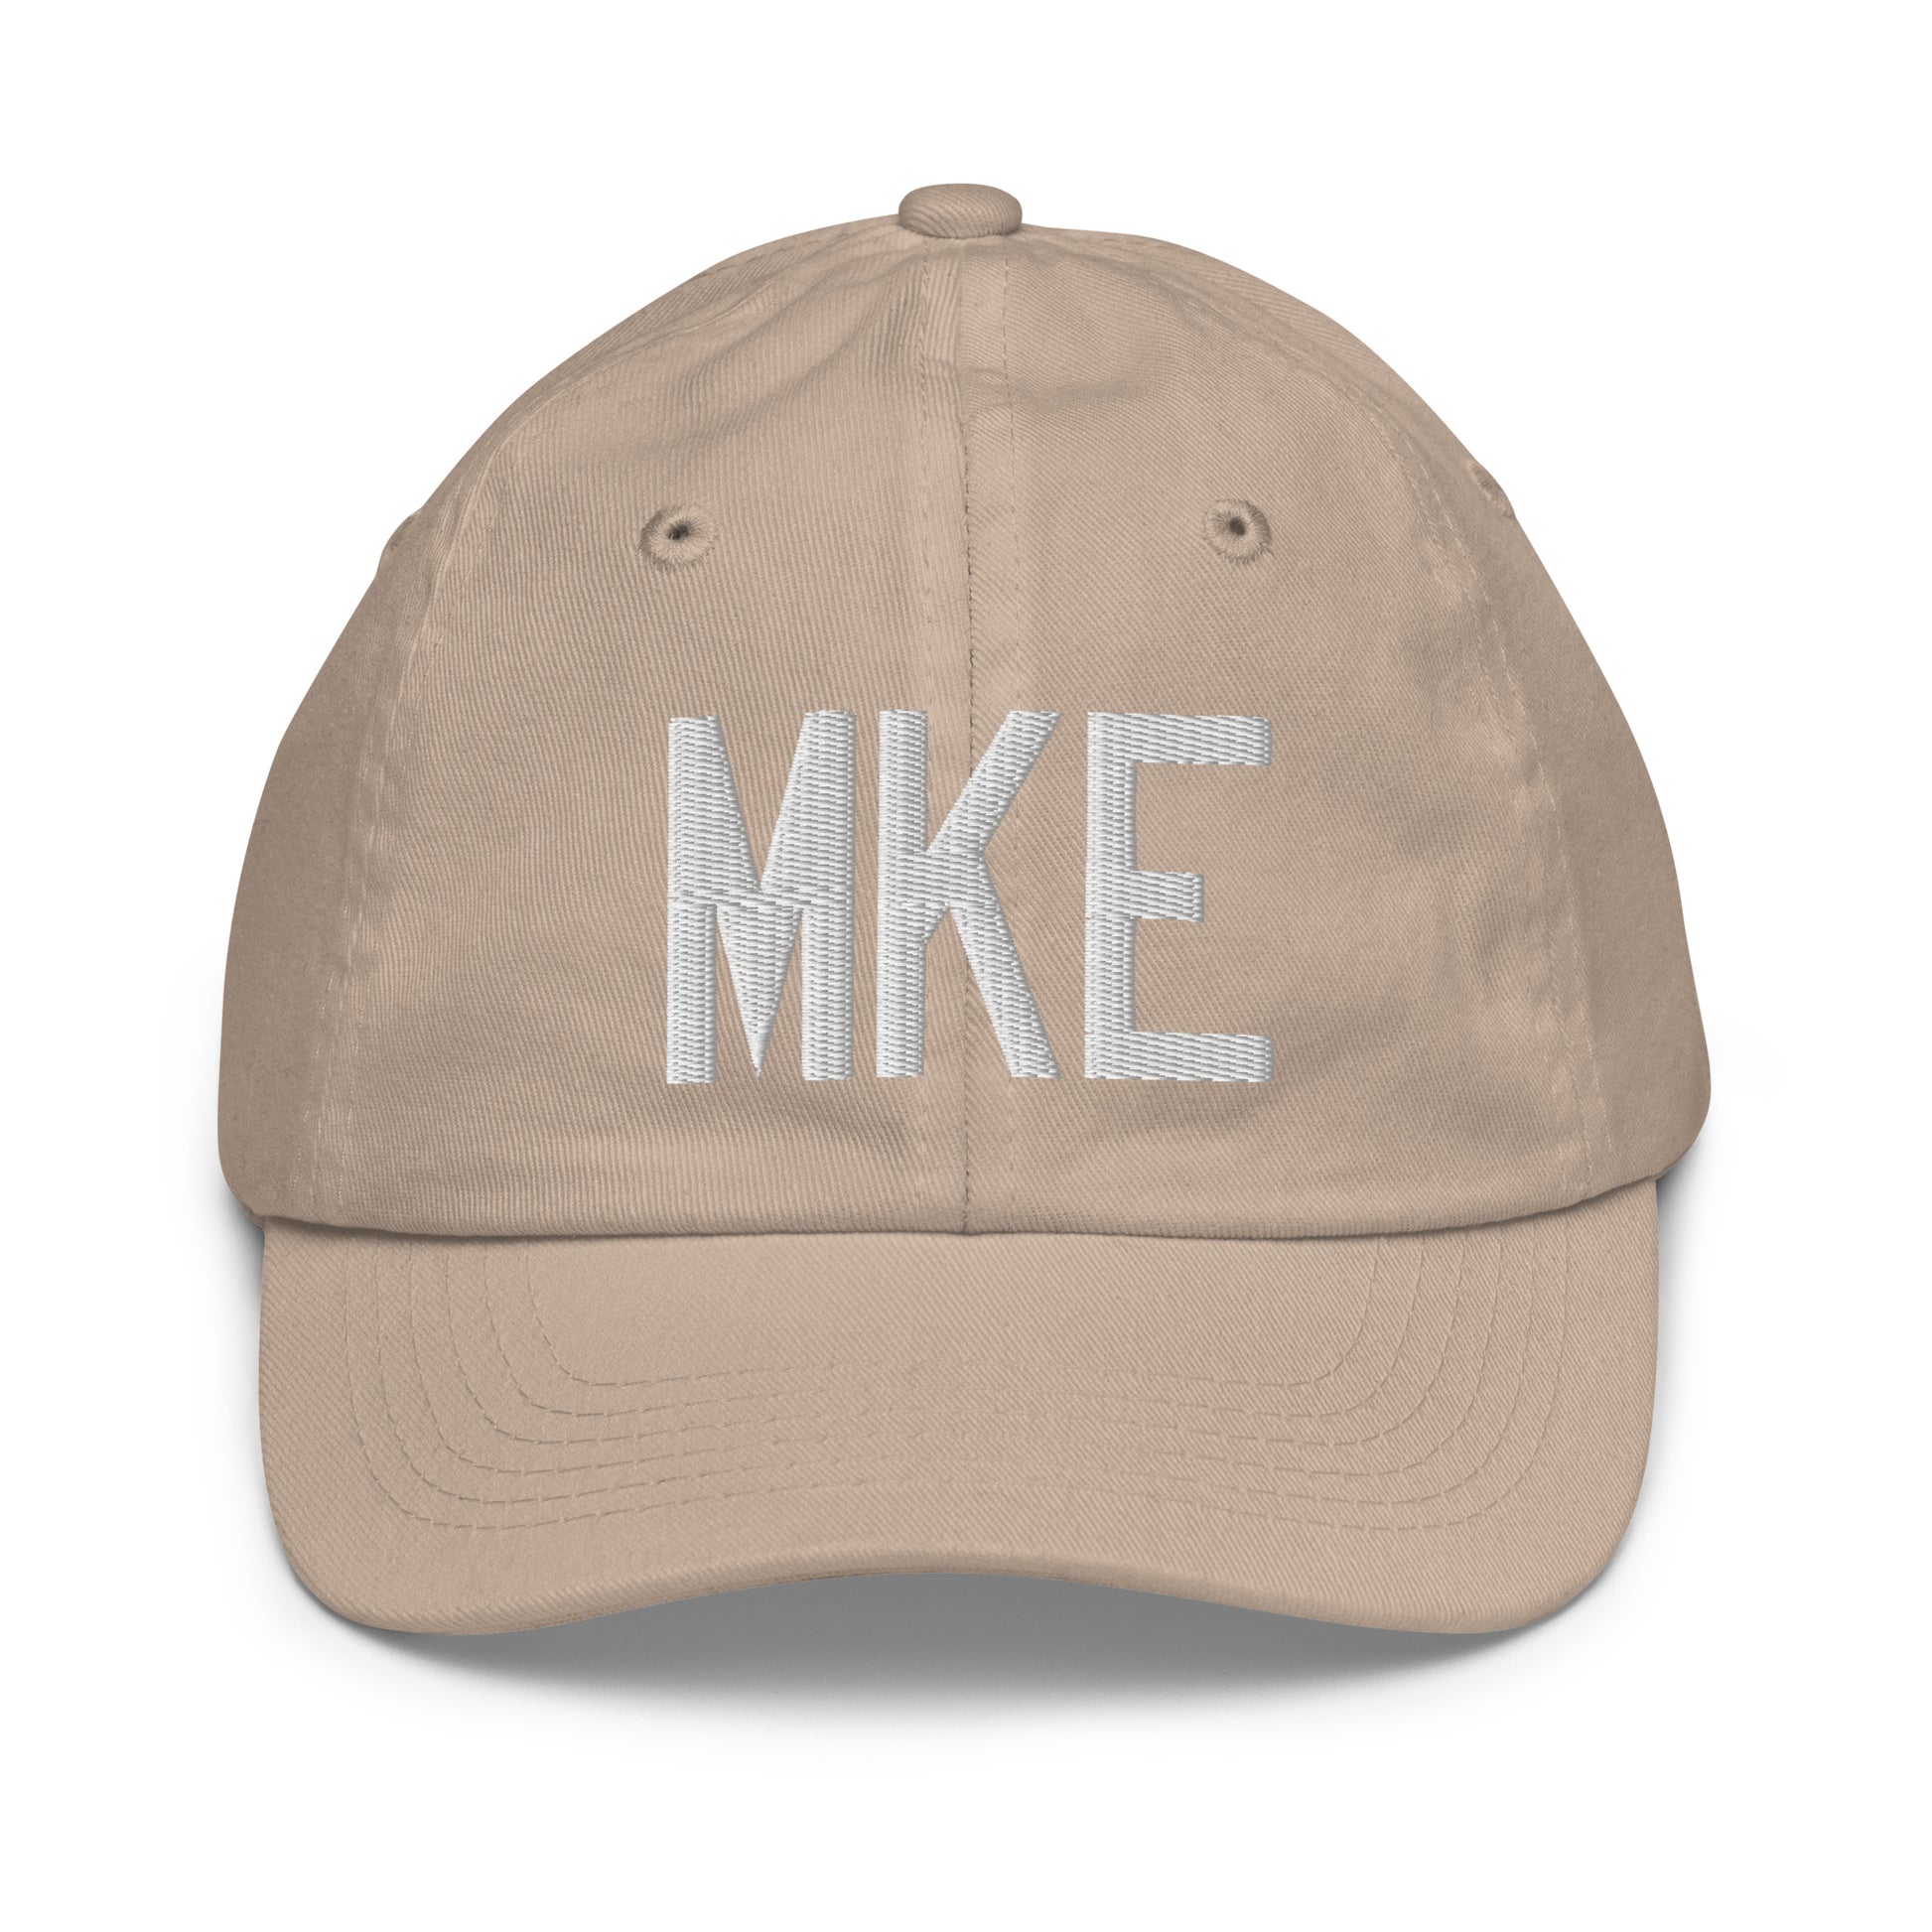 Airport Code Kid's Baseball Cap - White • MKE Milwaukee • YHM Designs - Image 28